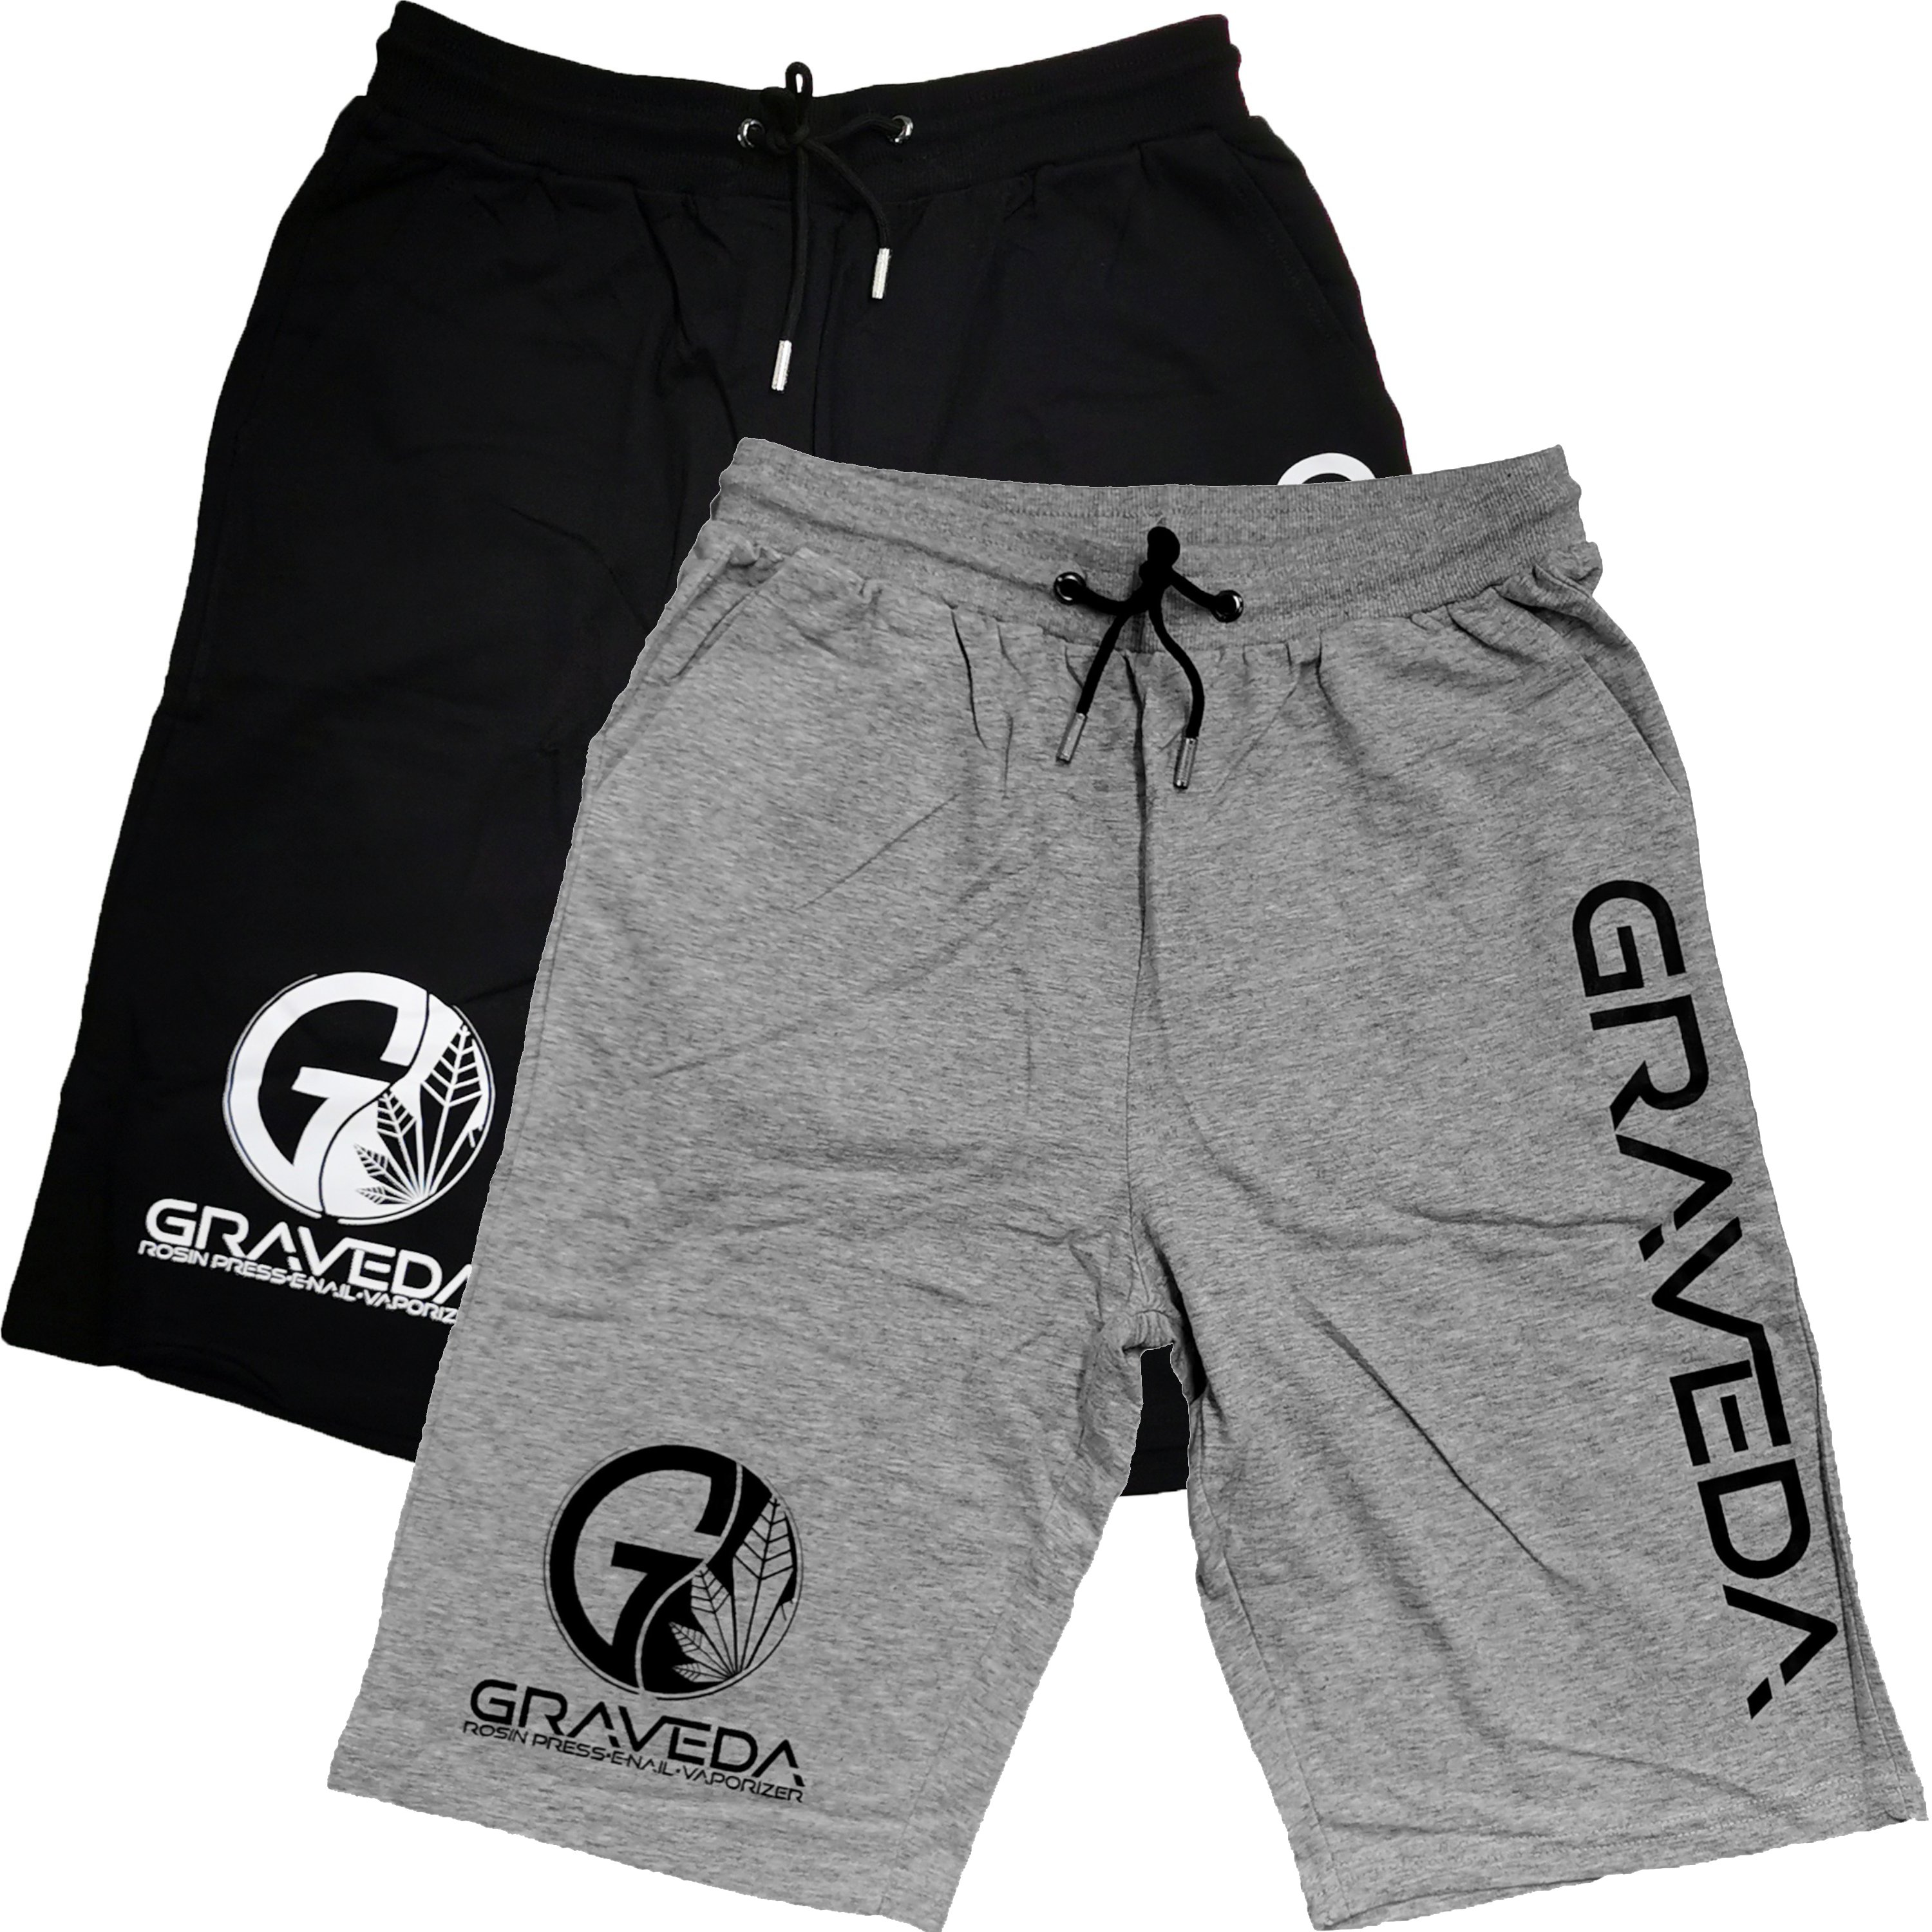 Graveda Shorts, 200g/m², in schwarz oder grau